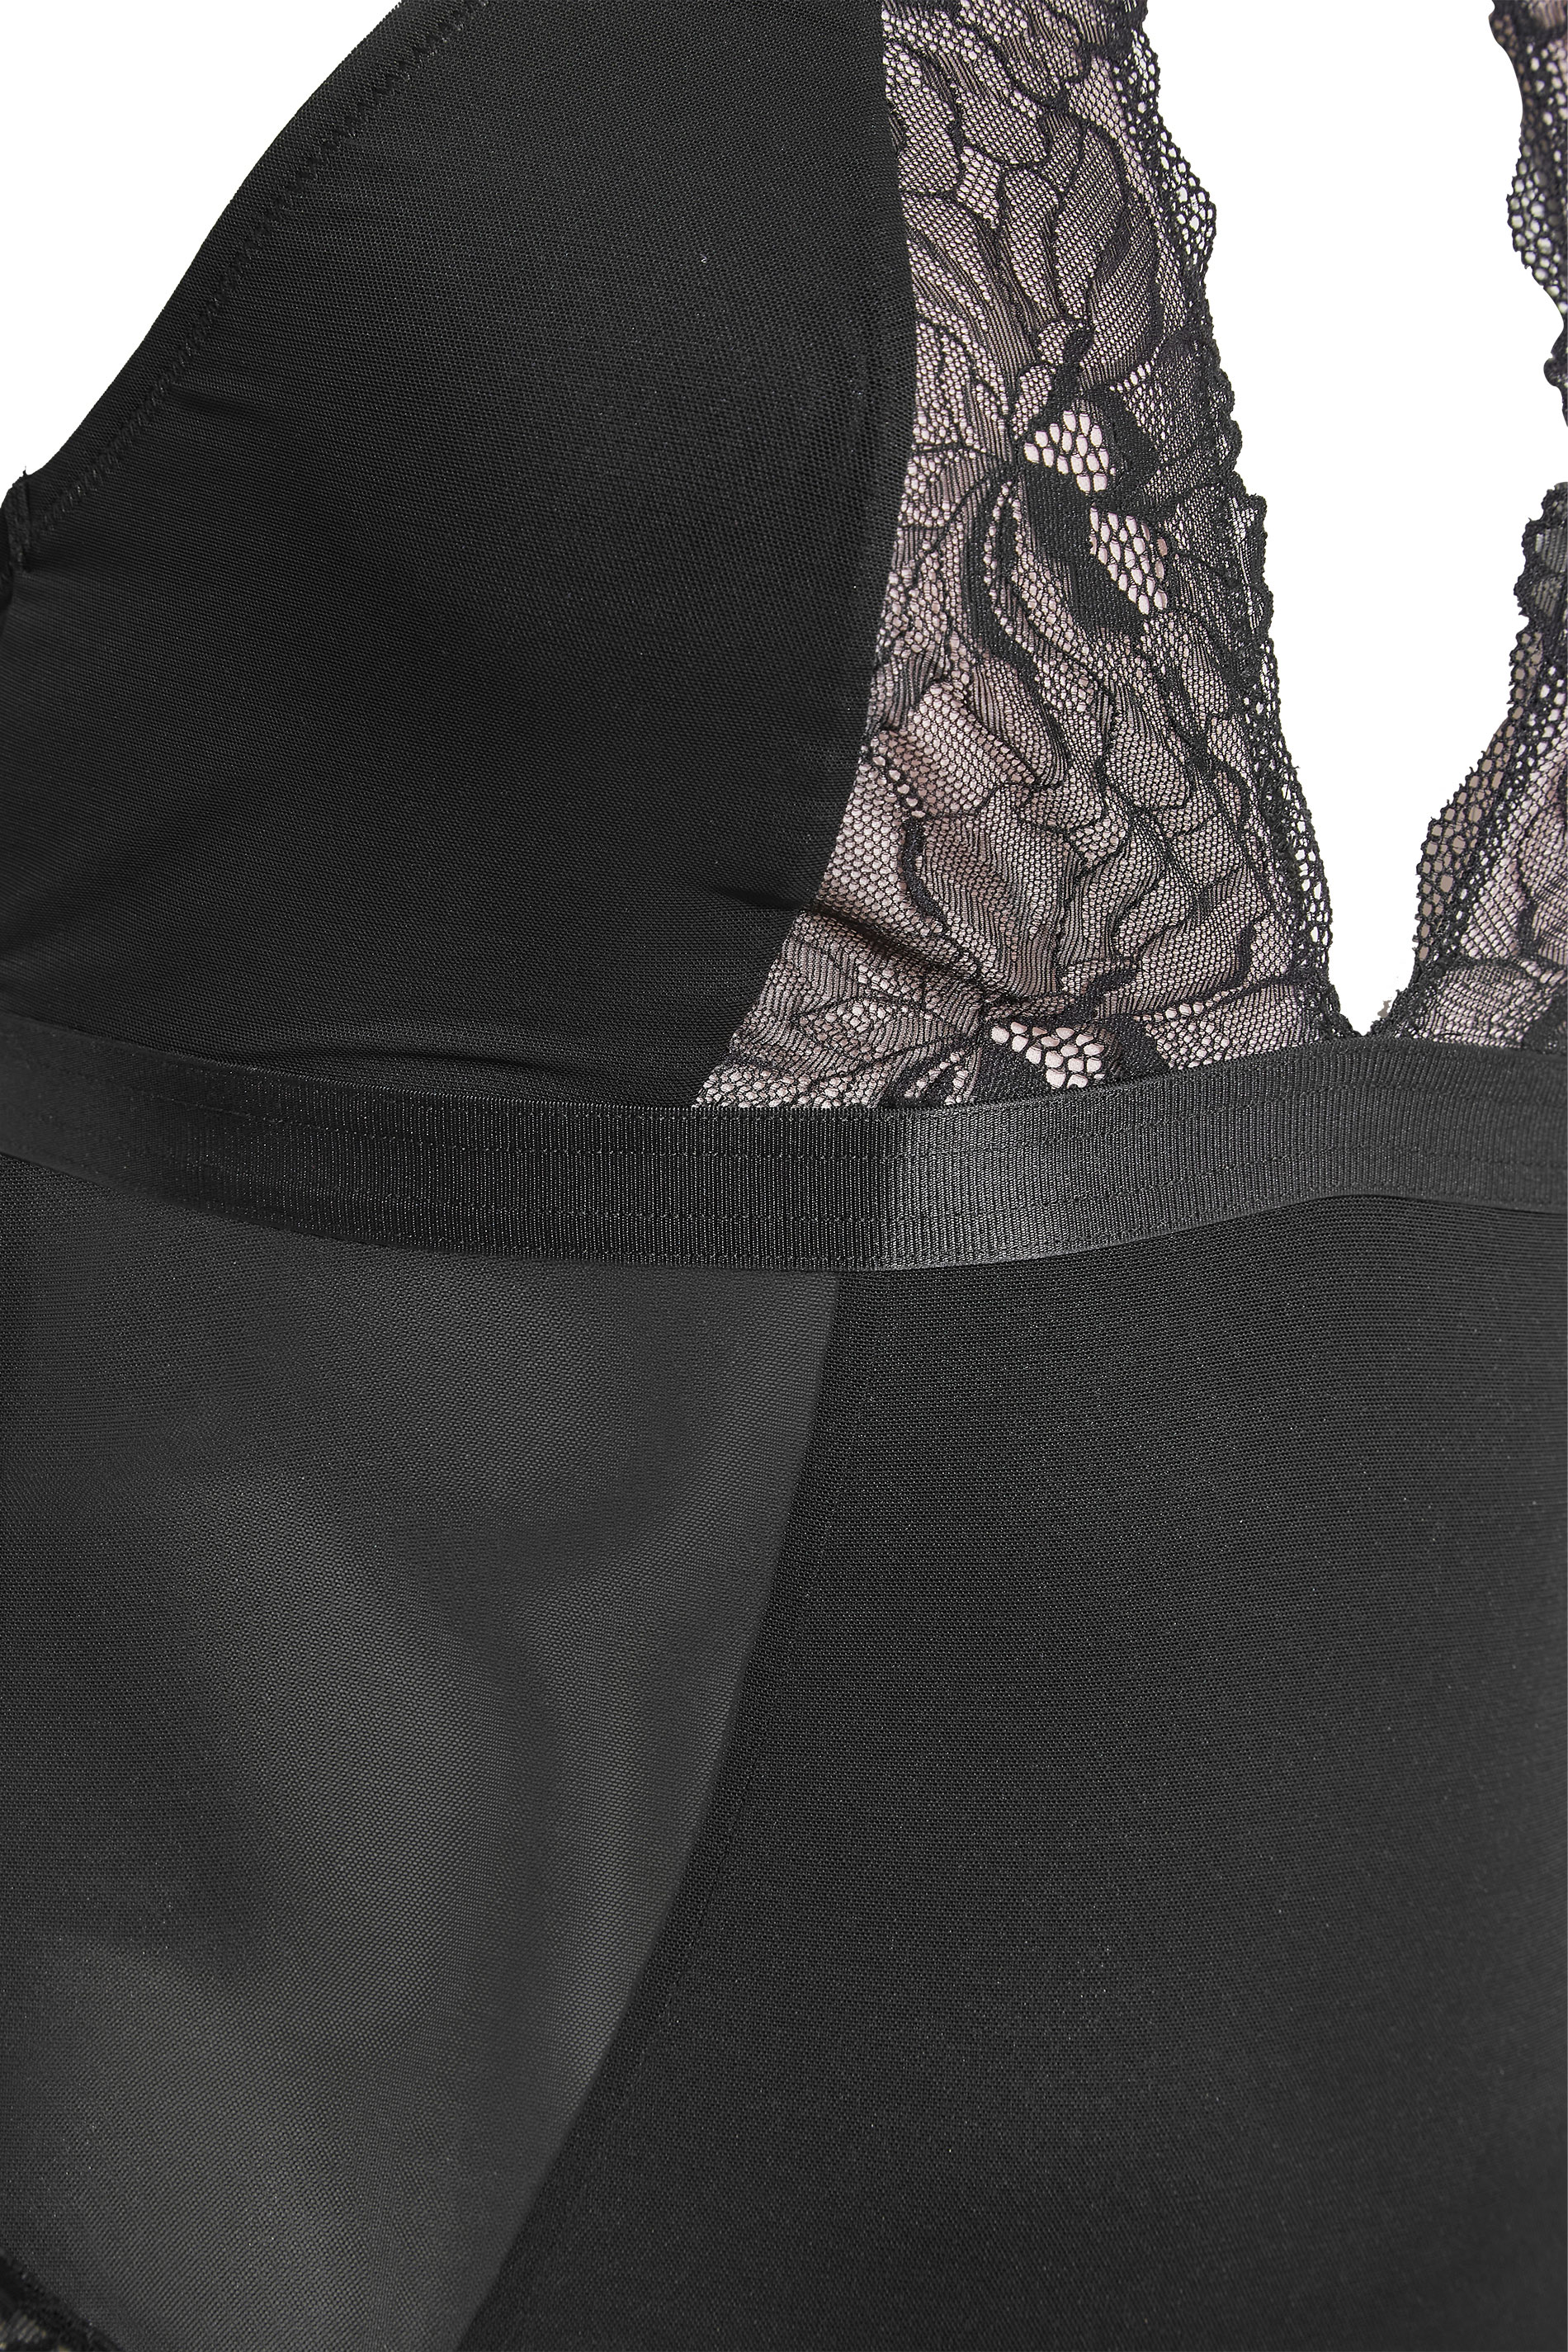 Plus Size Black Boudior Lace Halterneck Bodysuit | Yours Clothing 3